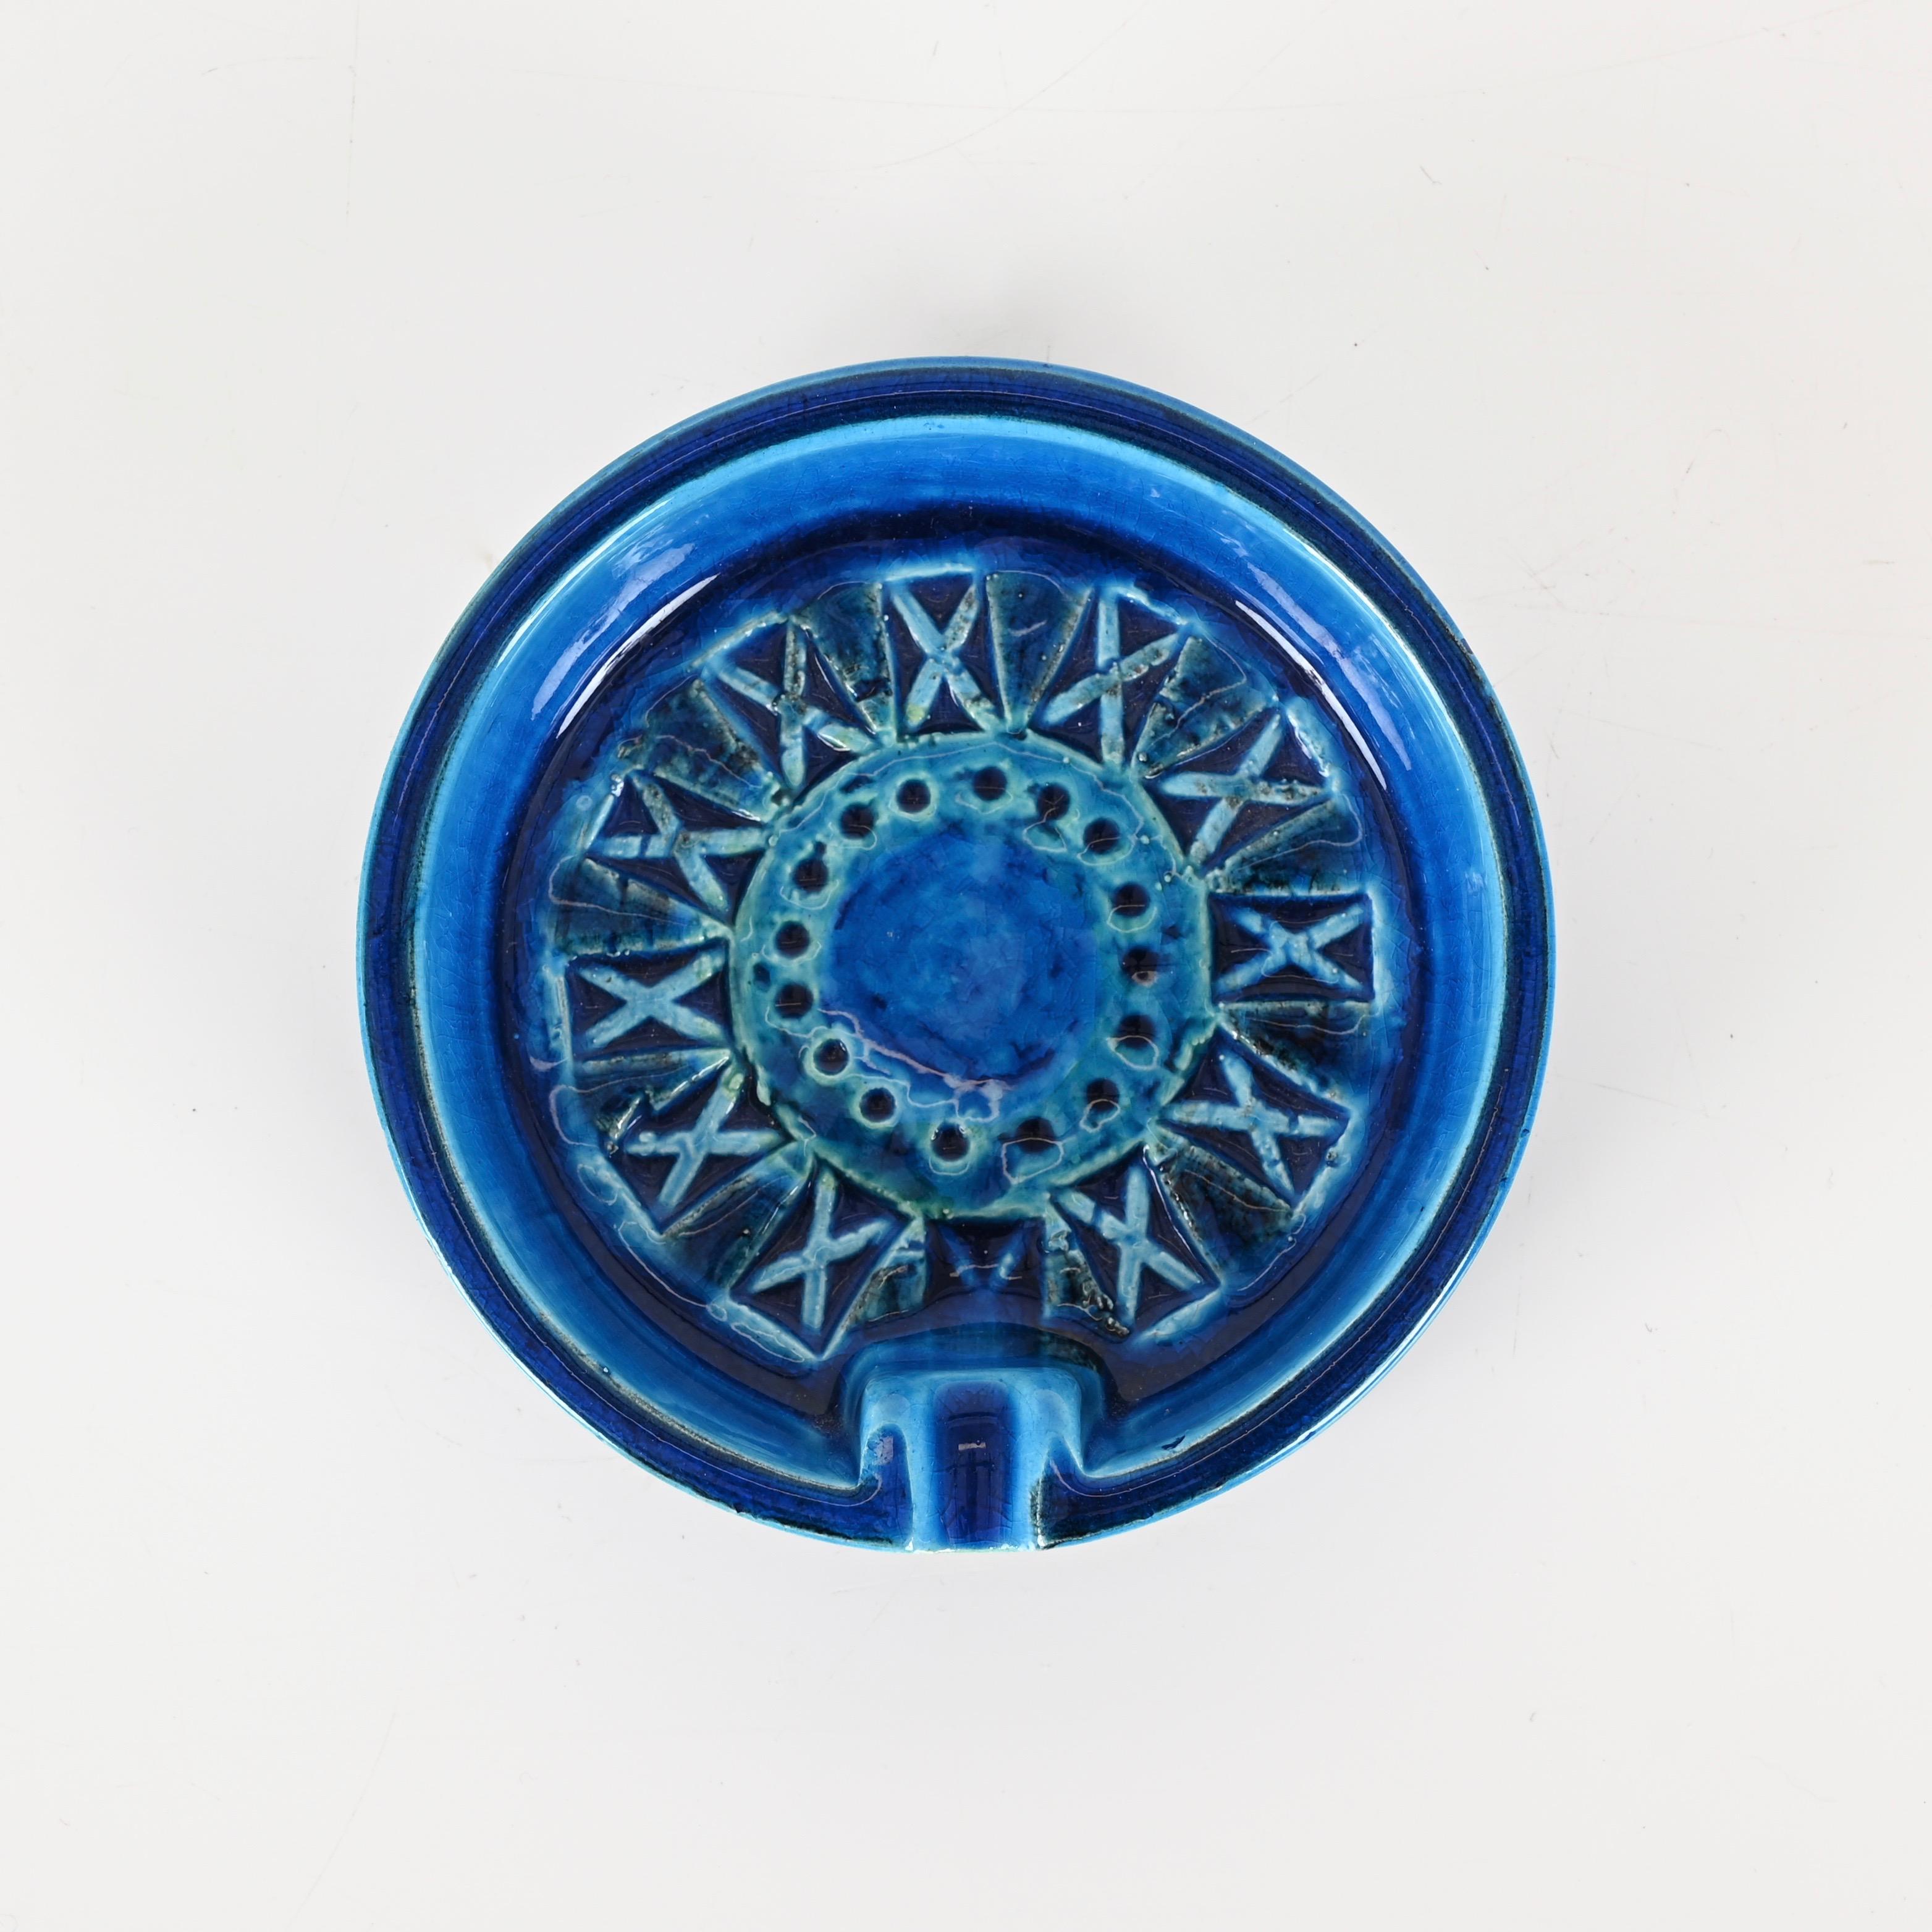 Original und signiert Mid-Century Aschenbecher in einem fantastischen lebendigen blauen glasierten Keramik (Rimini Blu). Diese erstaunliche  Das seltene Stück ist auf dem Boden signiert und wurde von Flavia Montelupo entworfen und in den 1960er